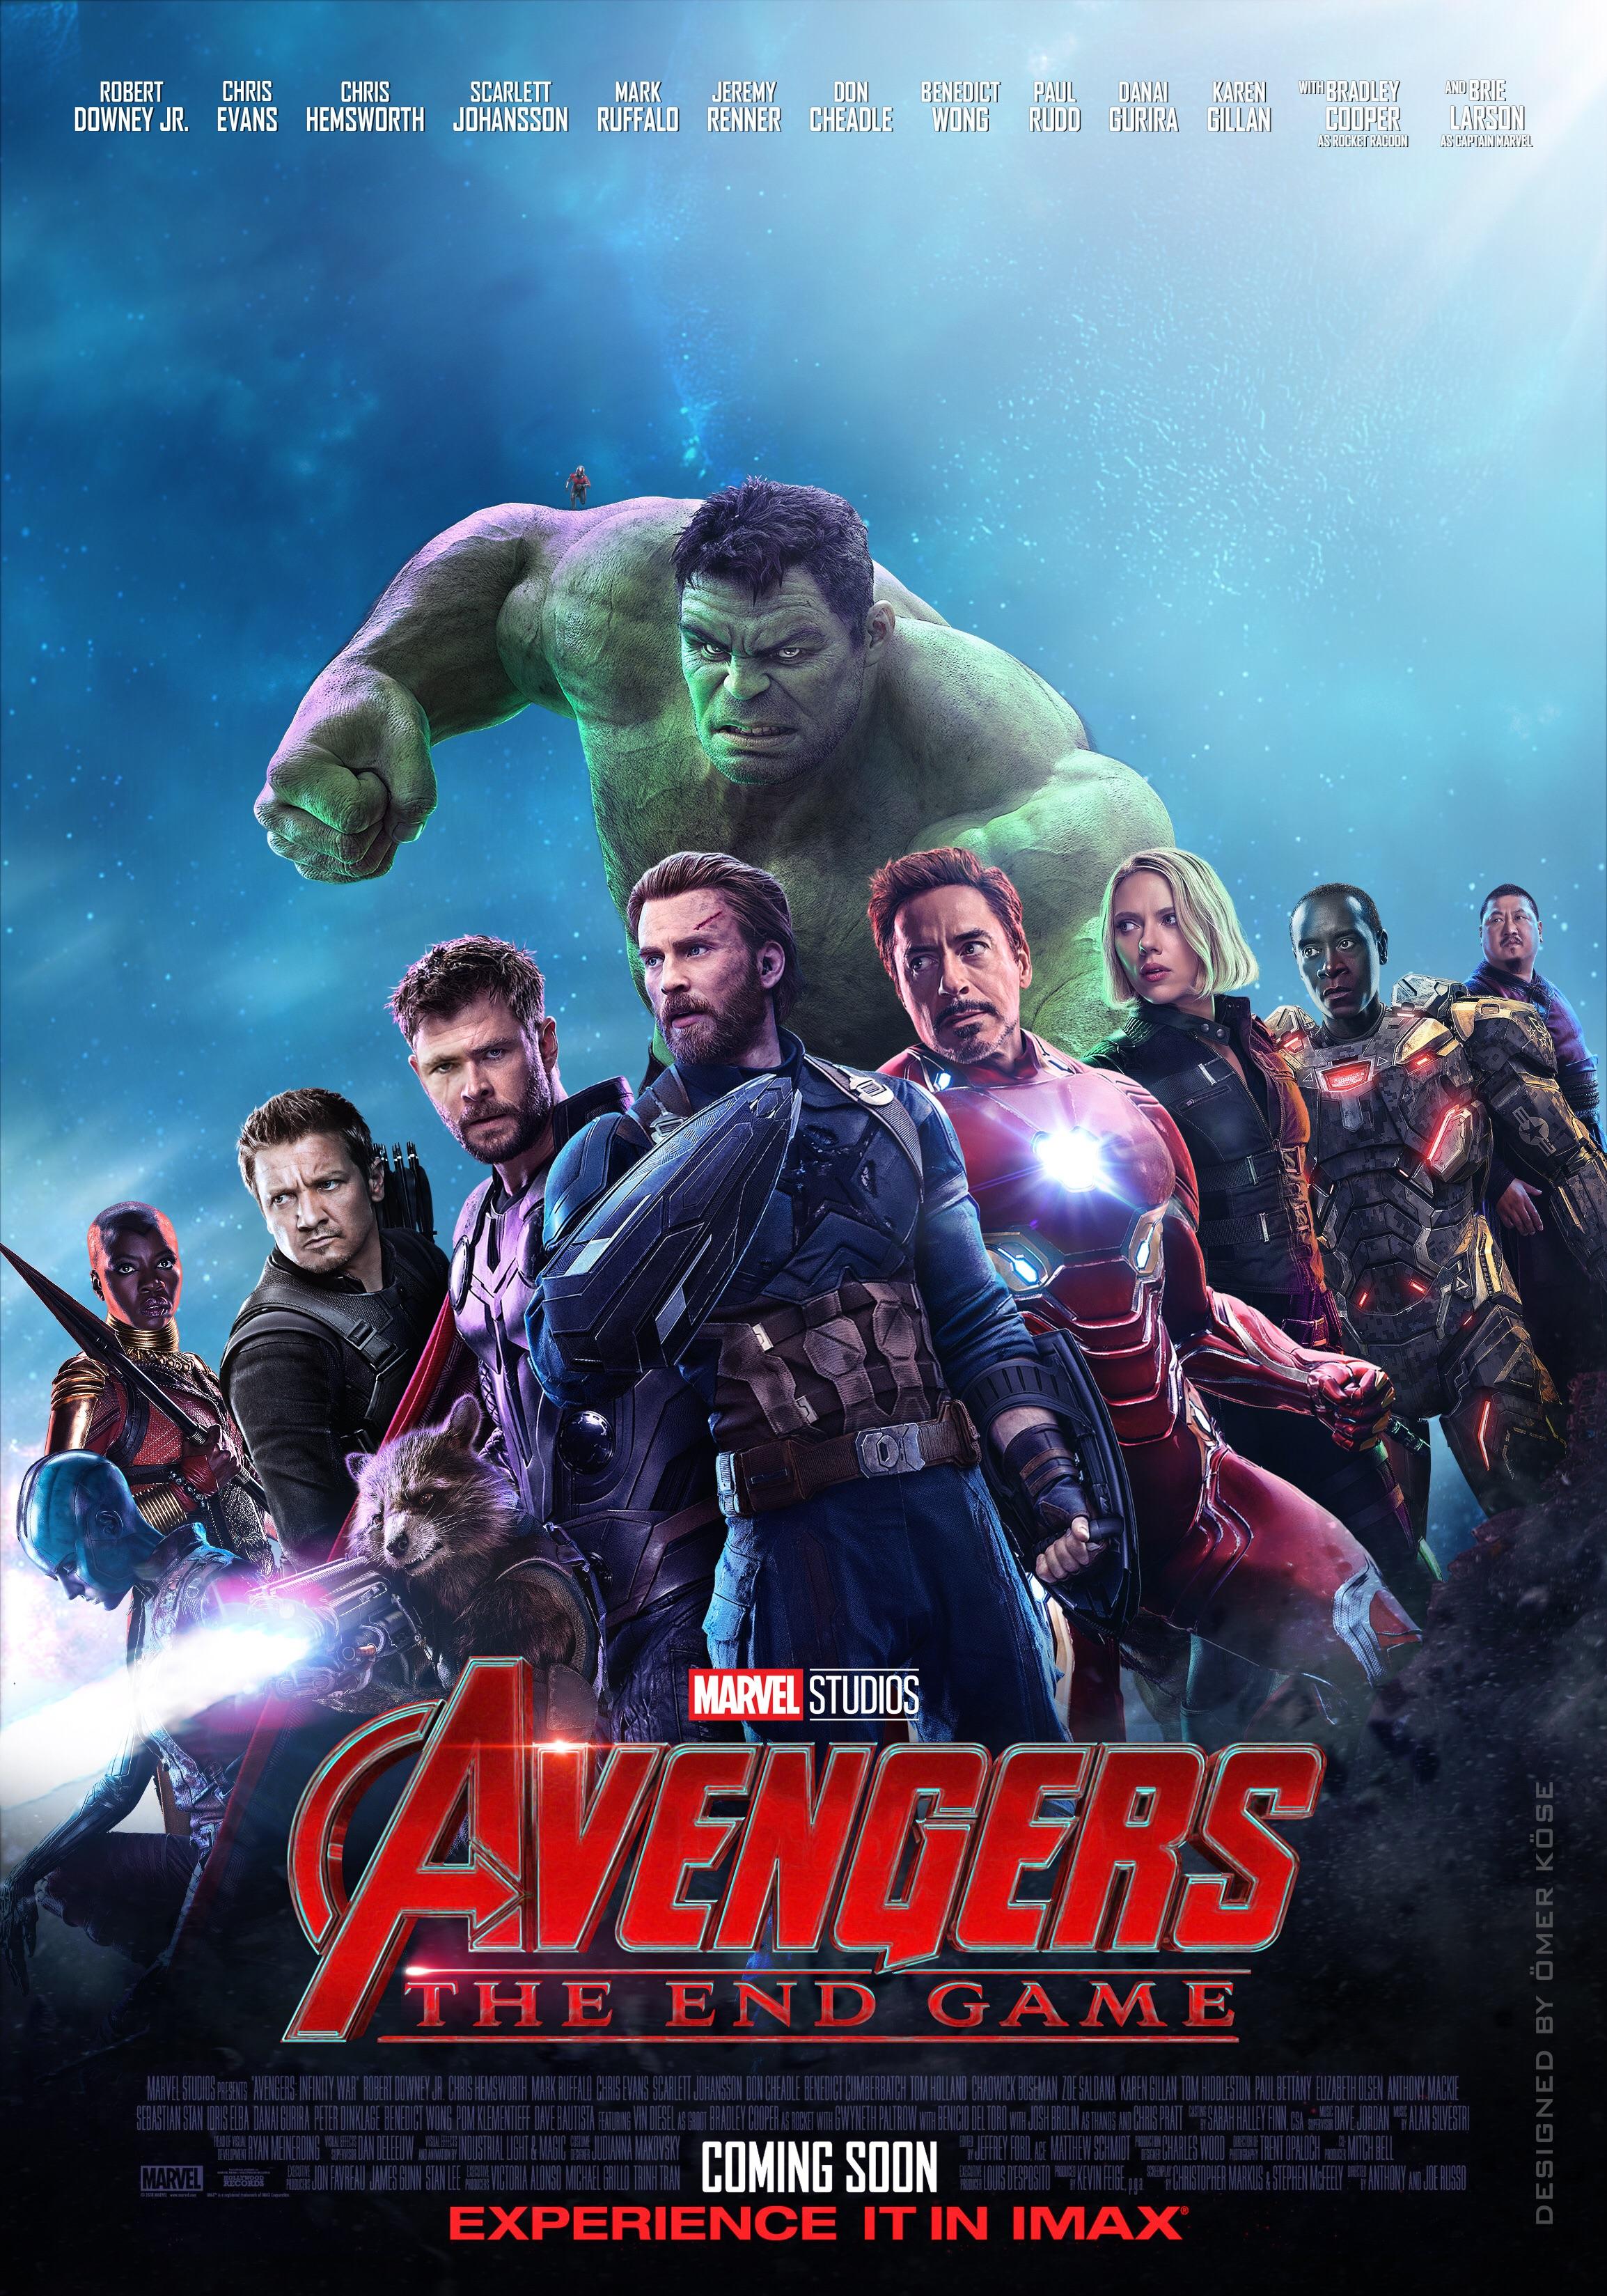 Avengers 4 Poster by Turkish Designer Omer Kose! Titled “Avengers